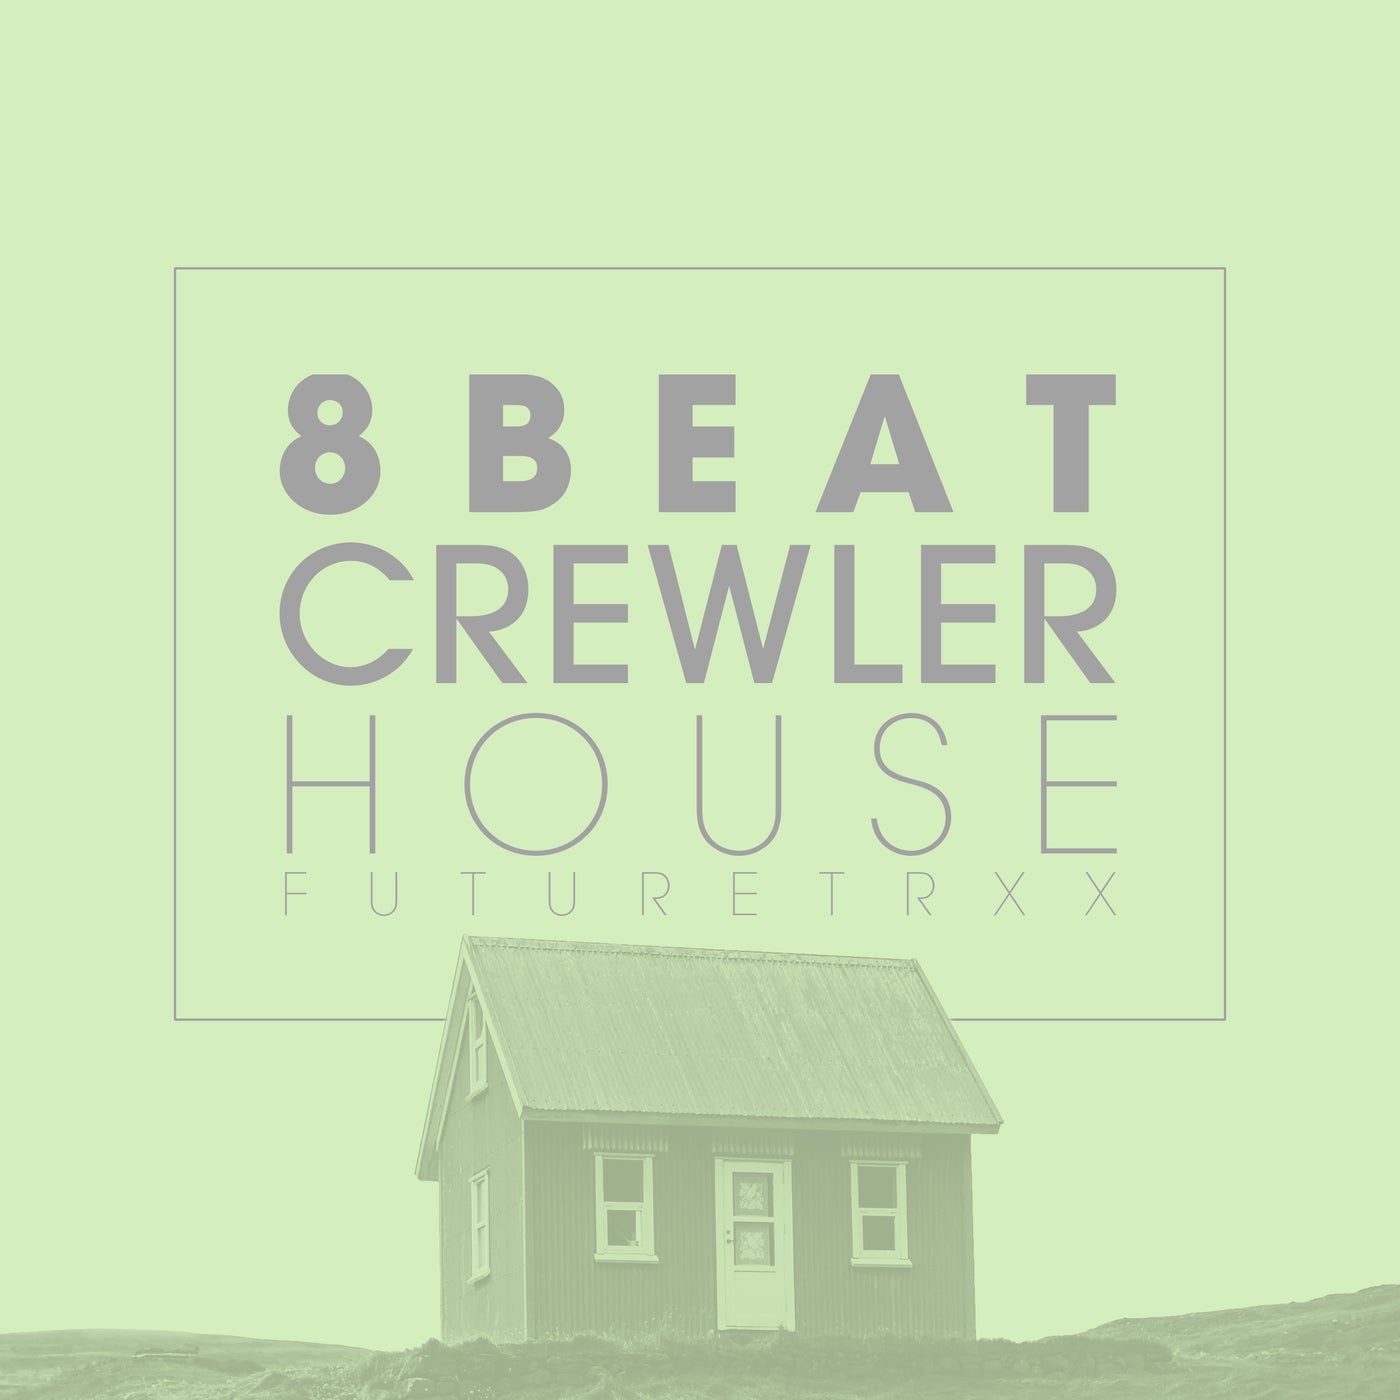 Crewler House